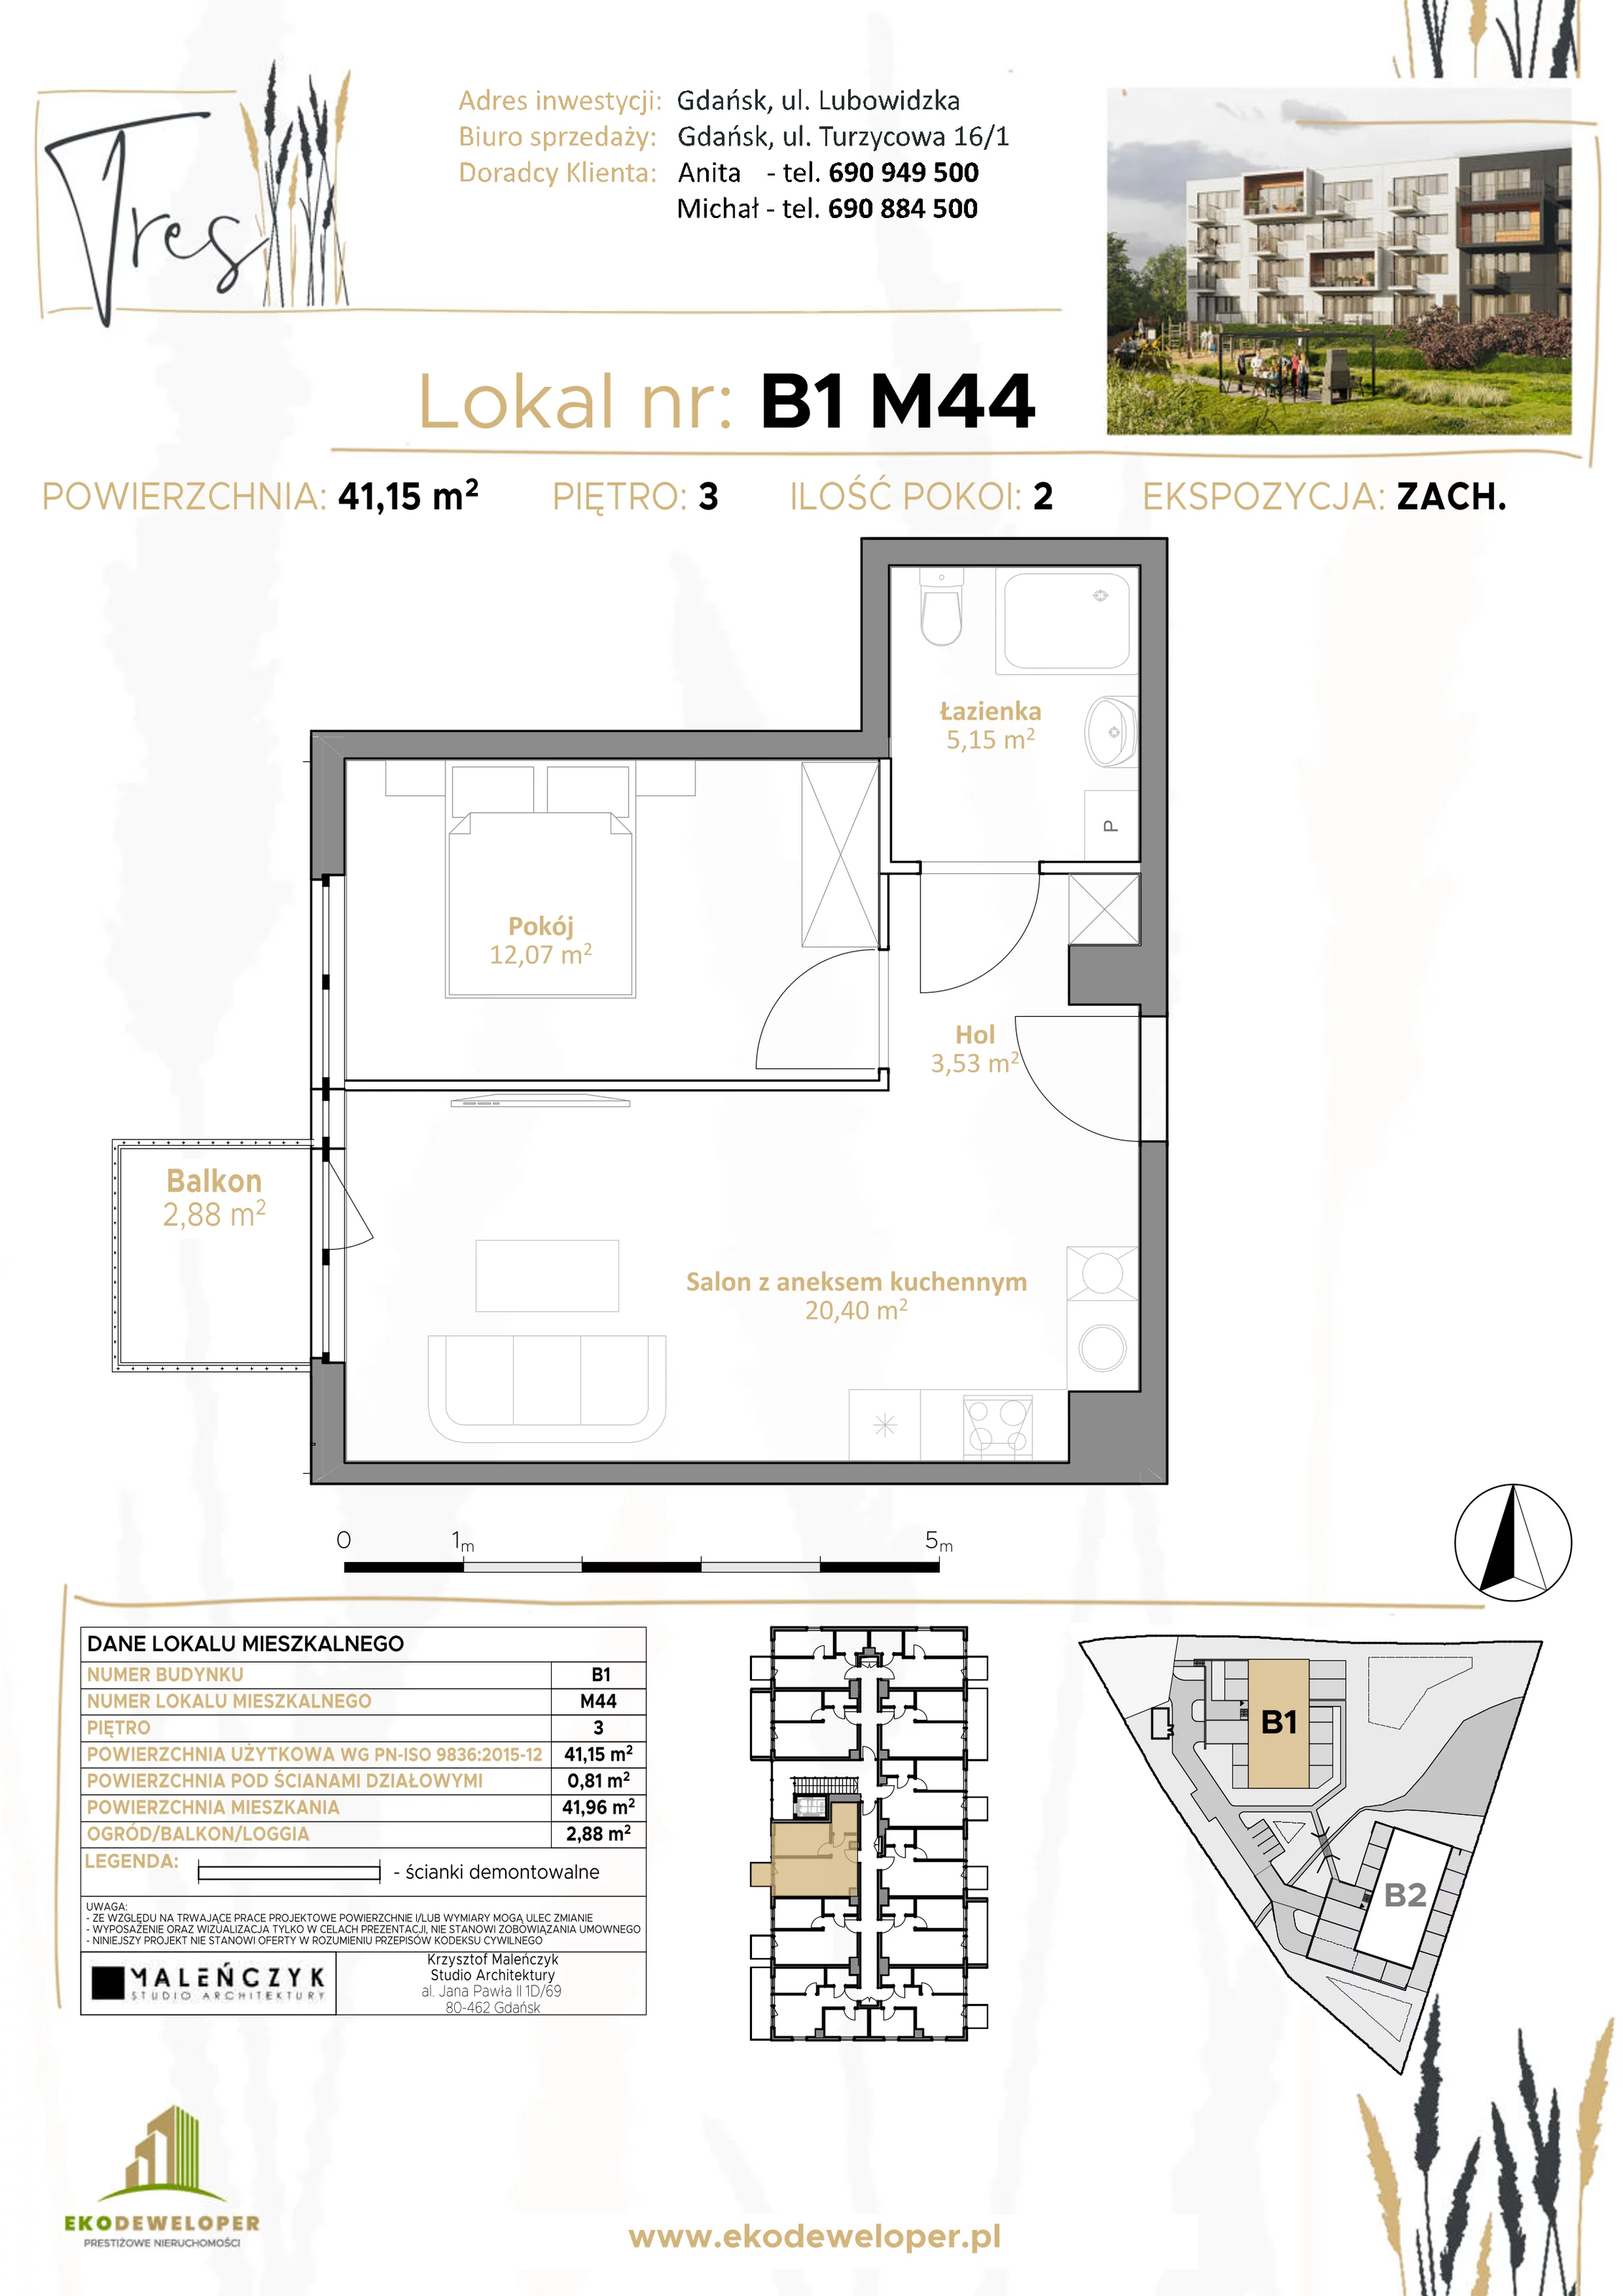 Mieszkanie 41,15 m², piętro 3, oferta nr B1.M44, Tres, Gdańsk, Jasień, ul. Lubowidzka